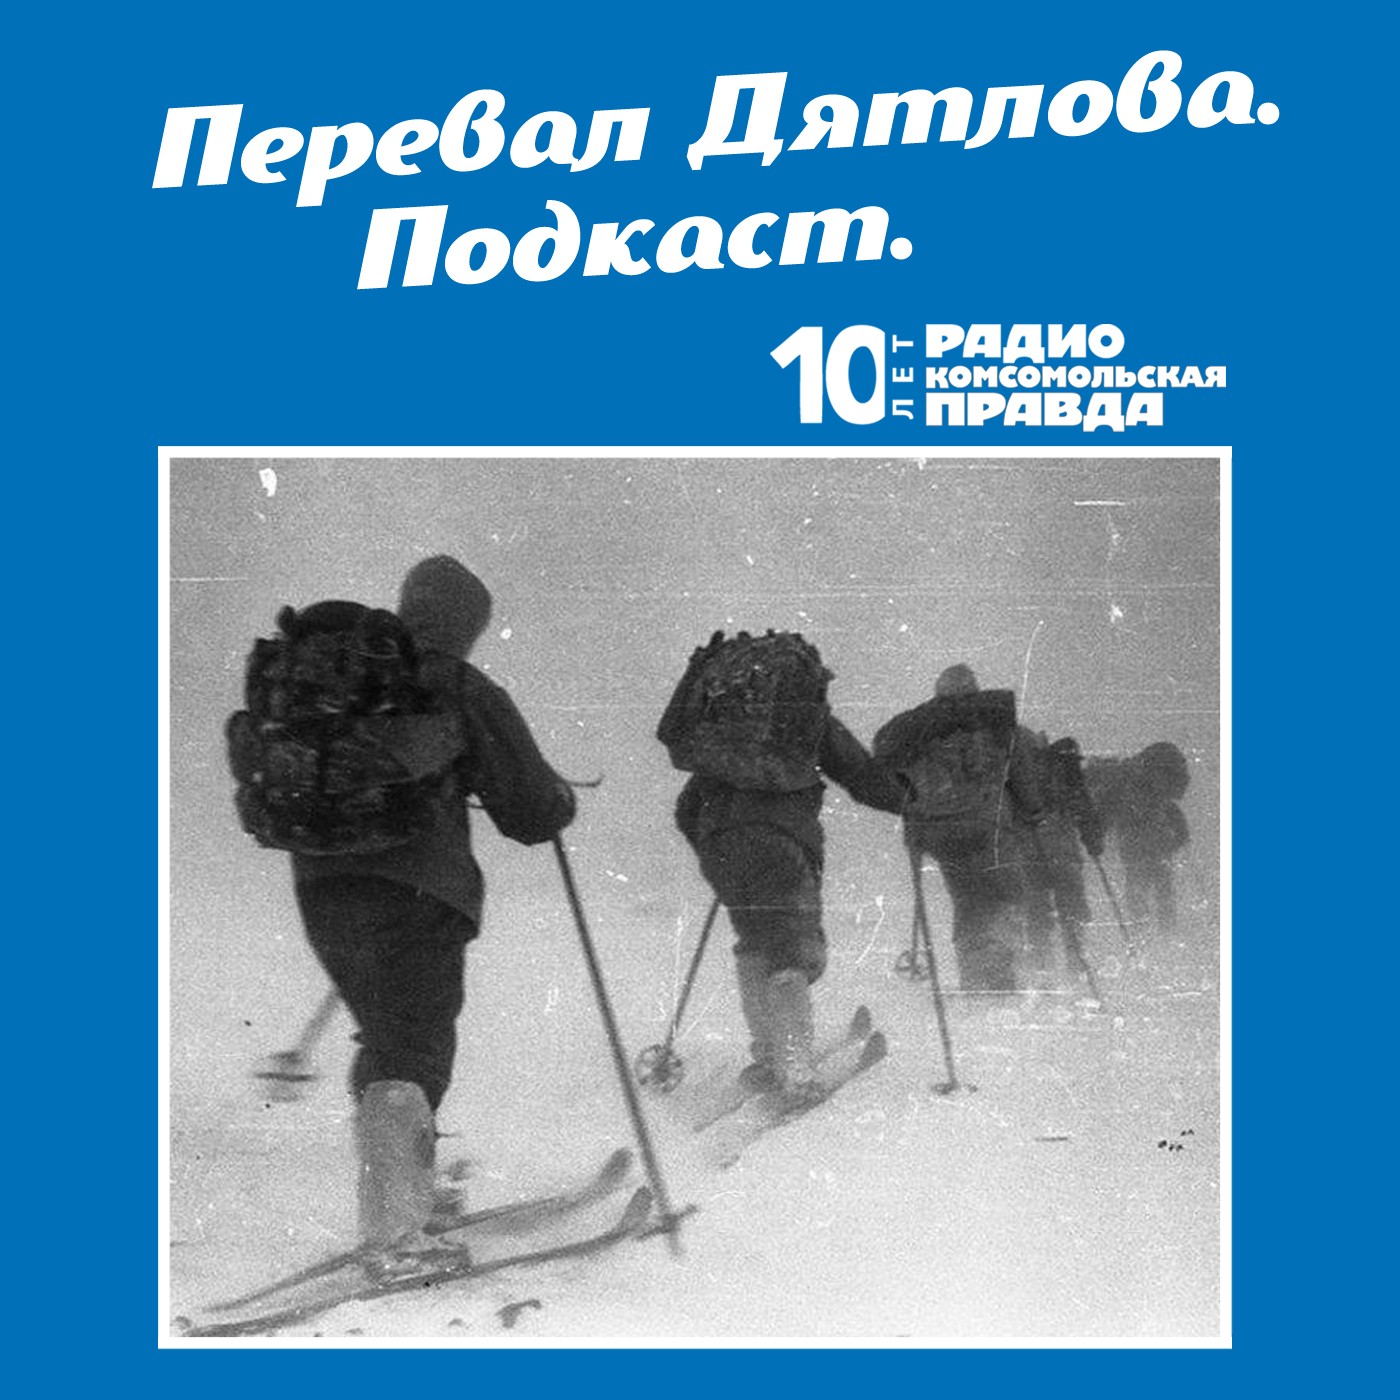 Скачать Трагедия на перевале Дятлова: 64 версии загадочной гибели туристов в 1959 году. Часть 113 и 114 - Радио «Комсомольская правда»